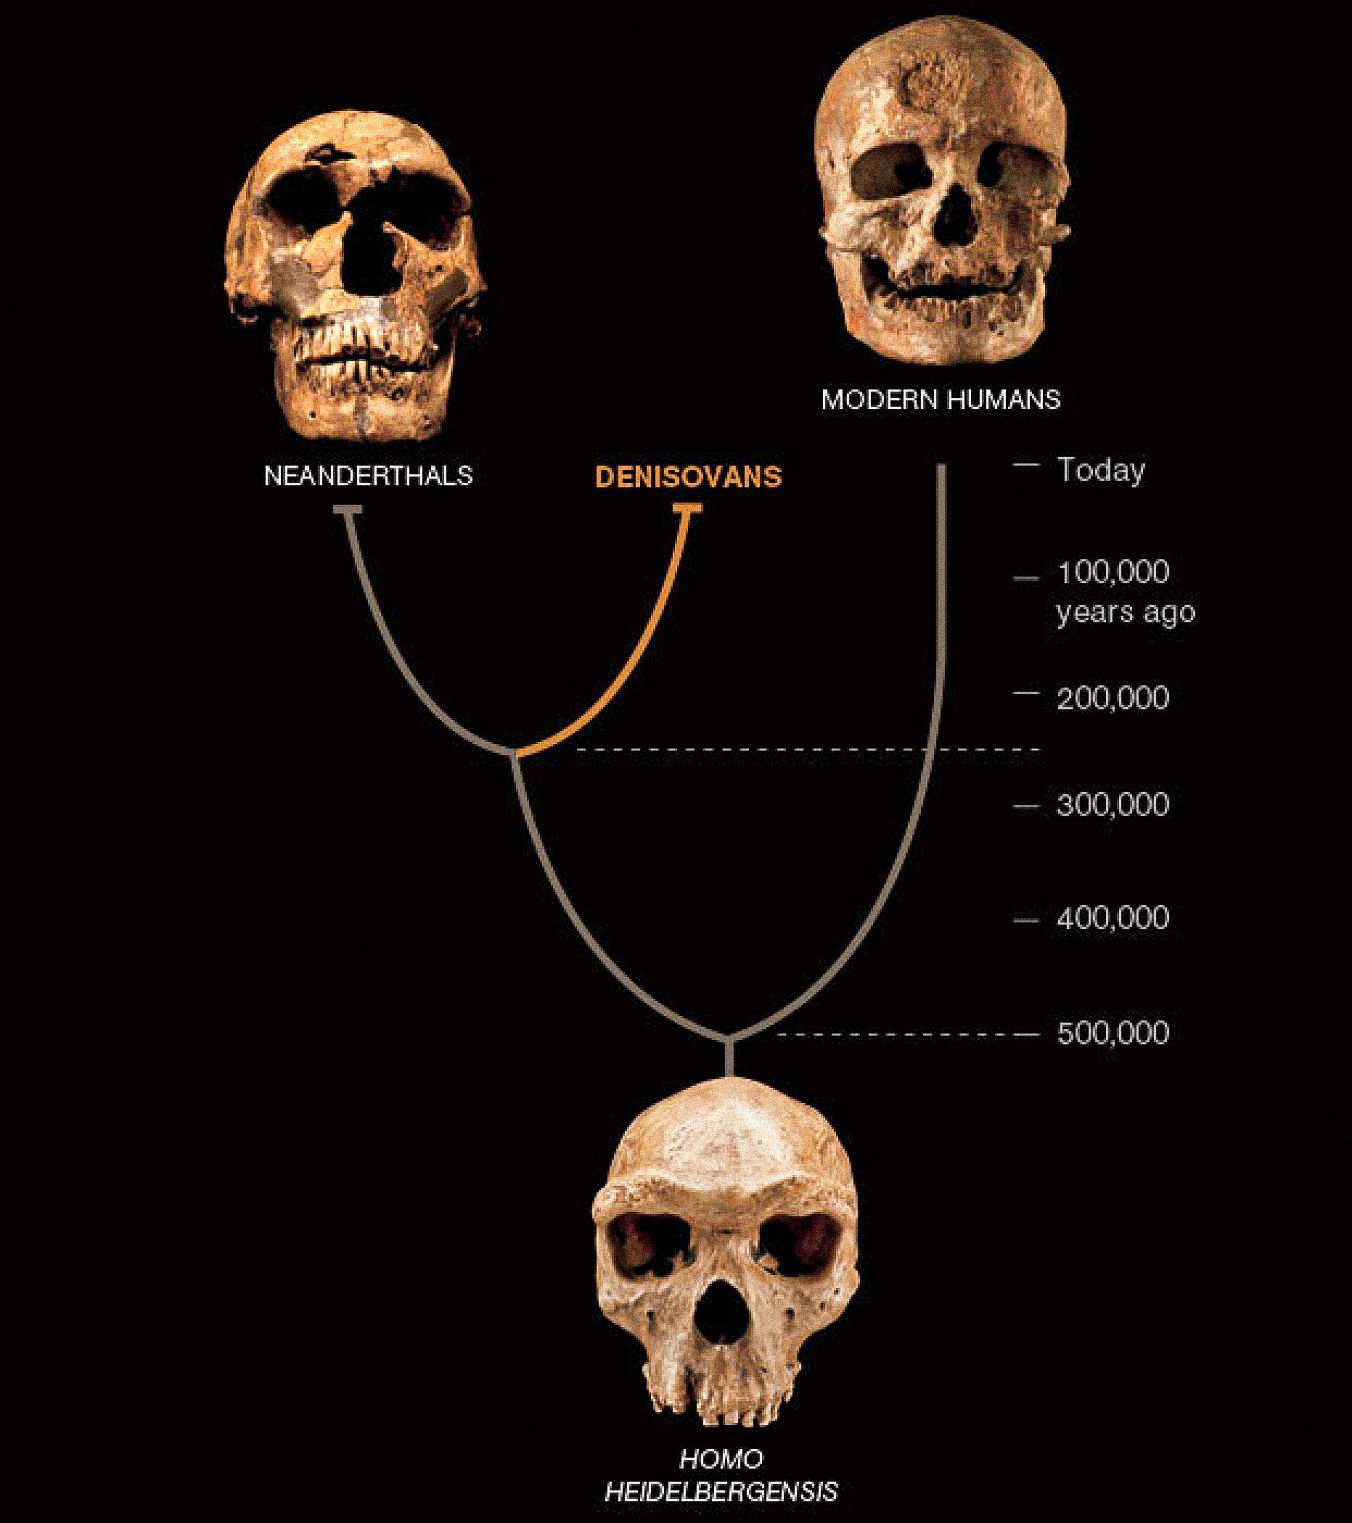 Čini se da je treća vrsta ljudi, nazvana Denisovci, koegzistirala u Aziji s neandertalcima i ranim modernim ljudima. Posljednje dvije poznate su iz bogatih fosila i artefakata. Denisovci su do sada definirani samo DNK-om iz jednog komadića kosti i dva zuba - ali to otkriva novi obrat u ljudskoj priči.